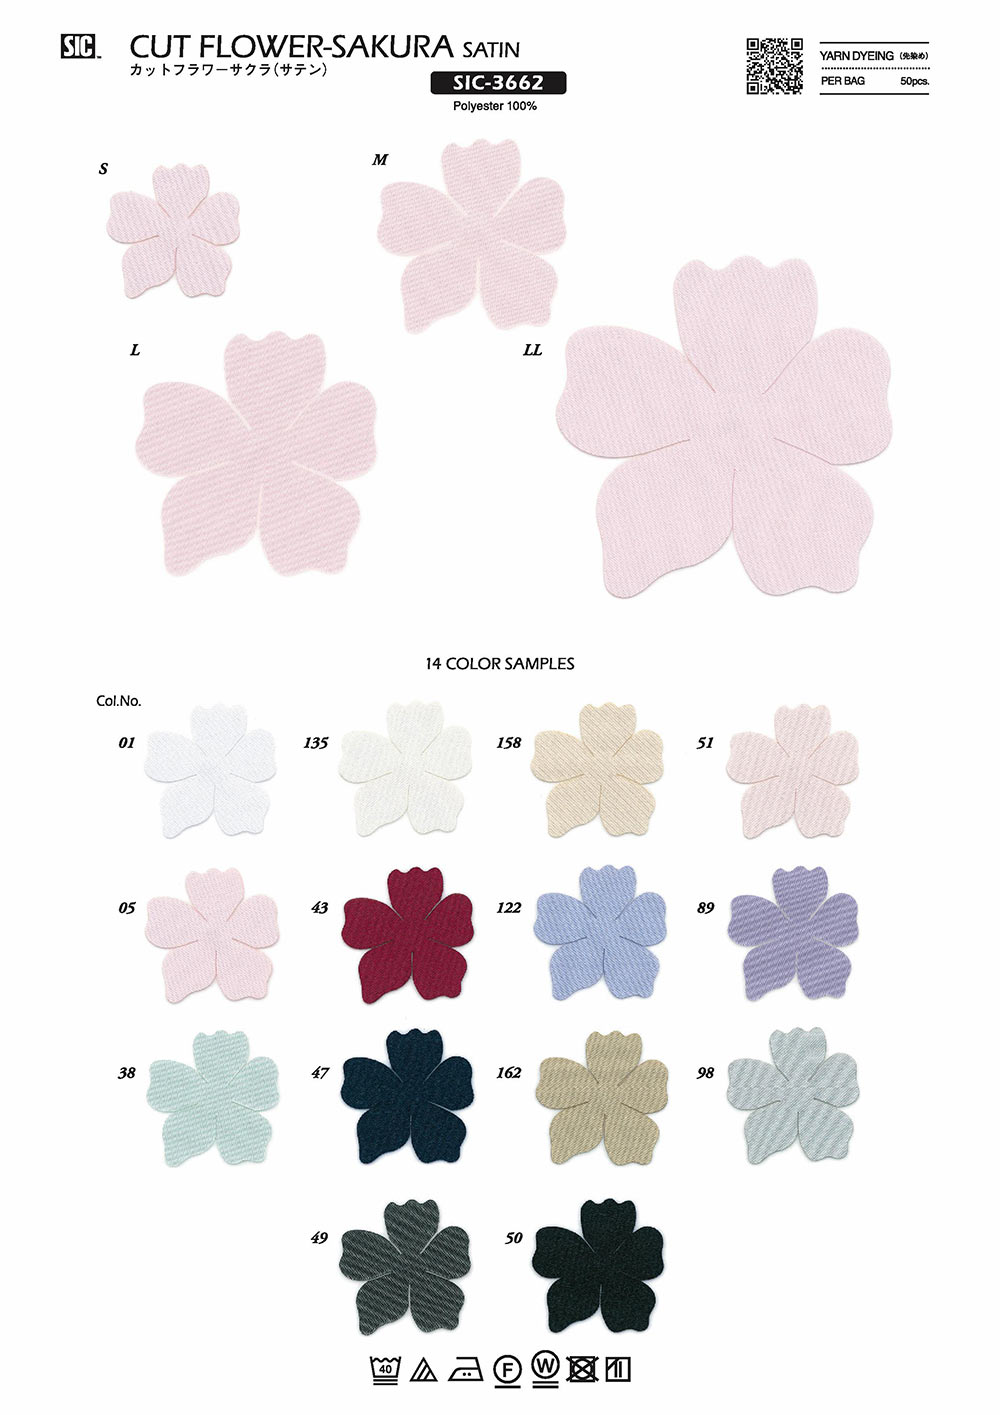 SIC-3662 Fleur Coupée Cerise (Satin)[Marchandises Diverses Et Autres] SHINDO(SIC)